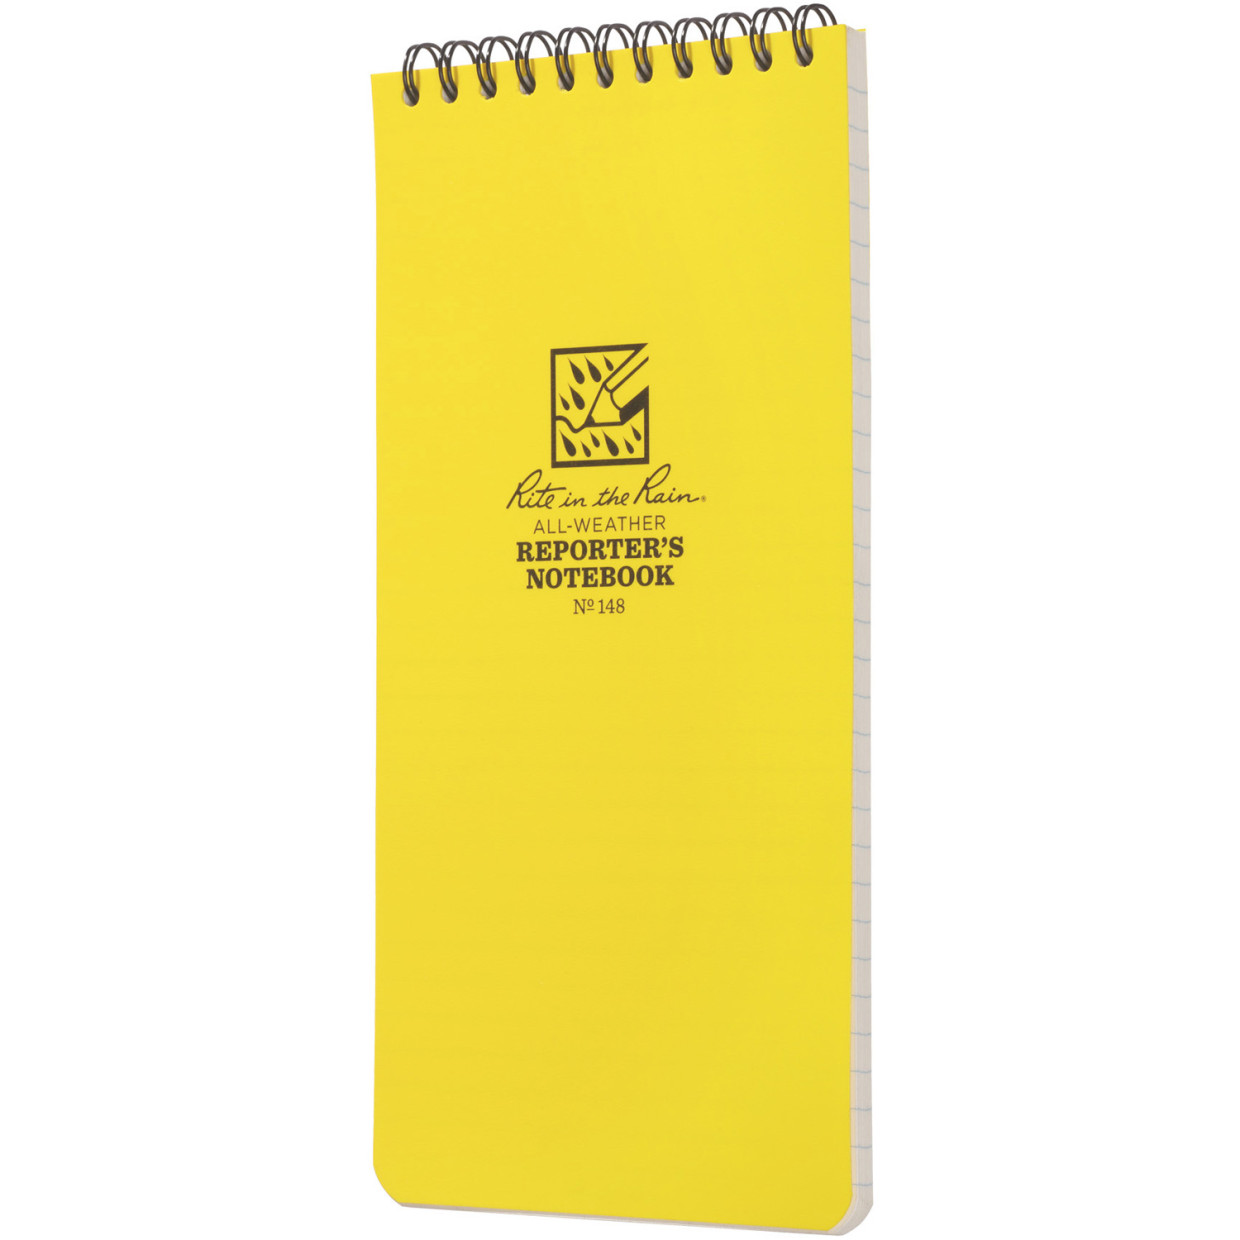 Waterproof notebook – Reporter's Notebook